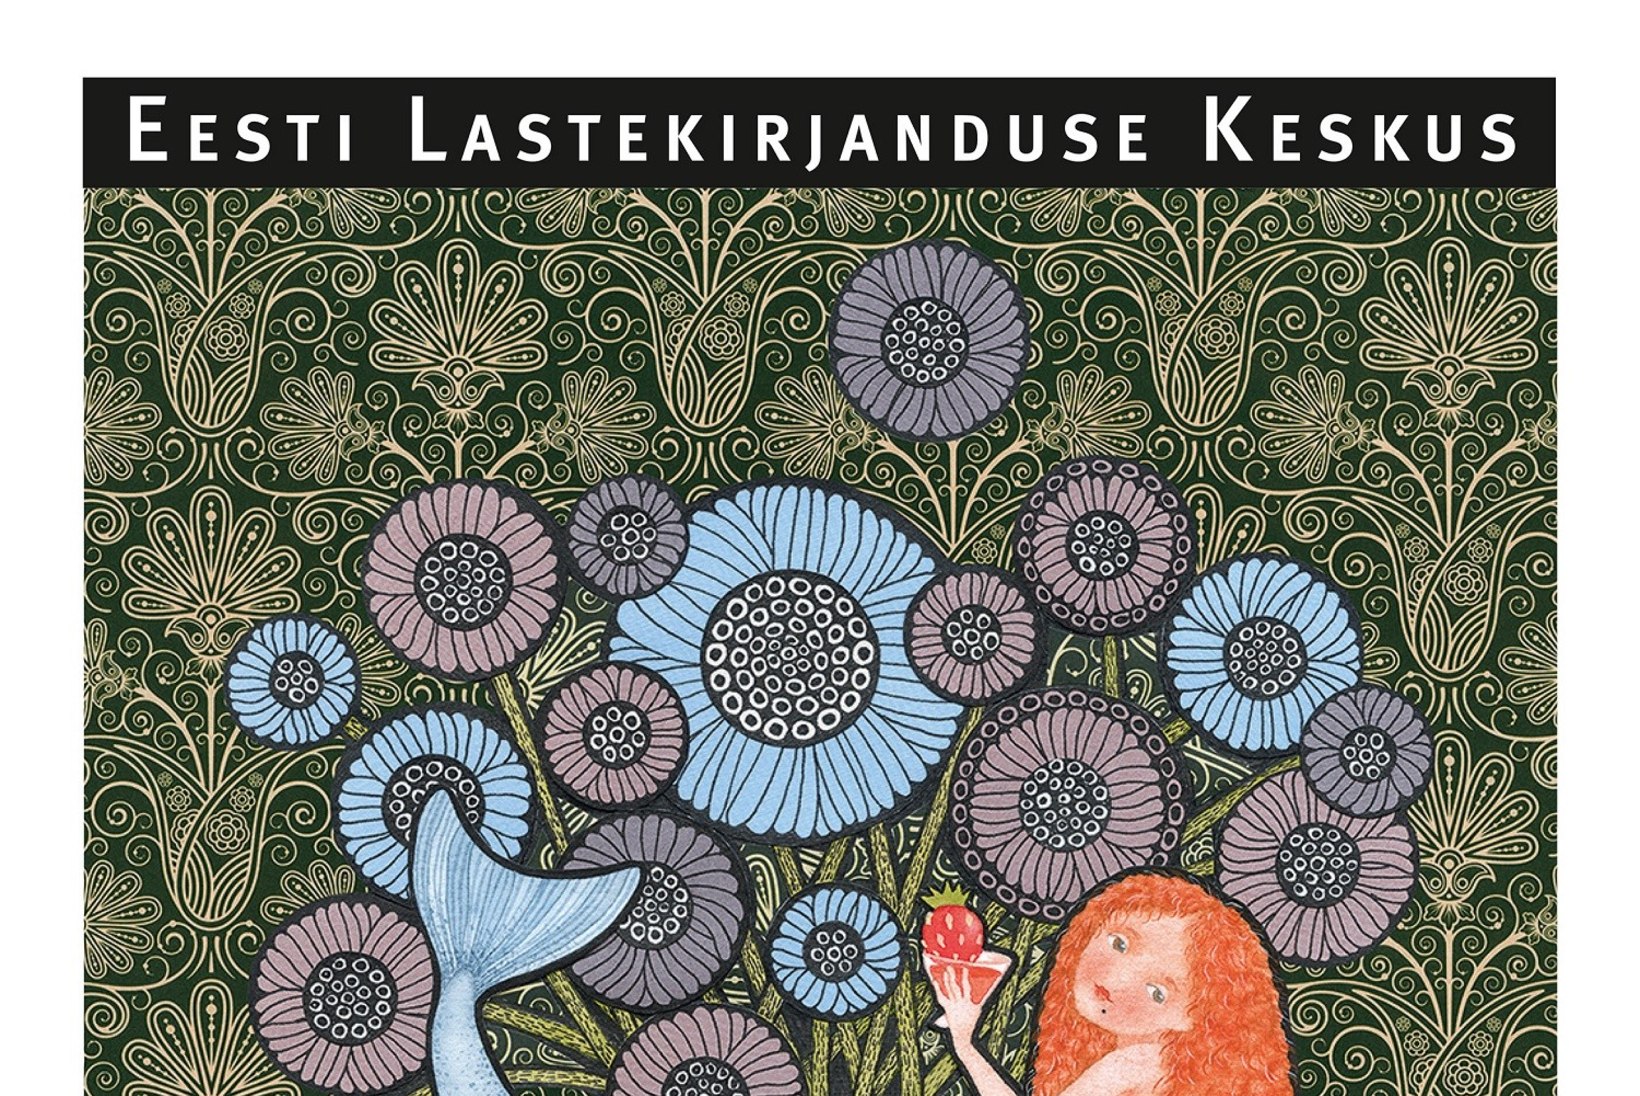 Lastekirjanduse keskuses avati Eesti illustraatorite ühisnäitus